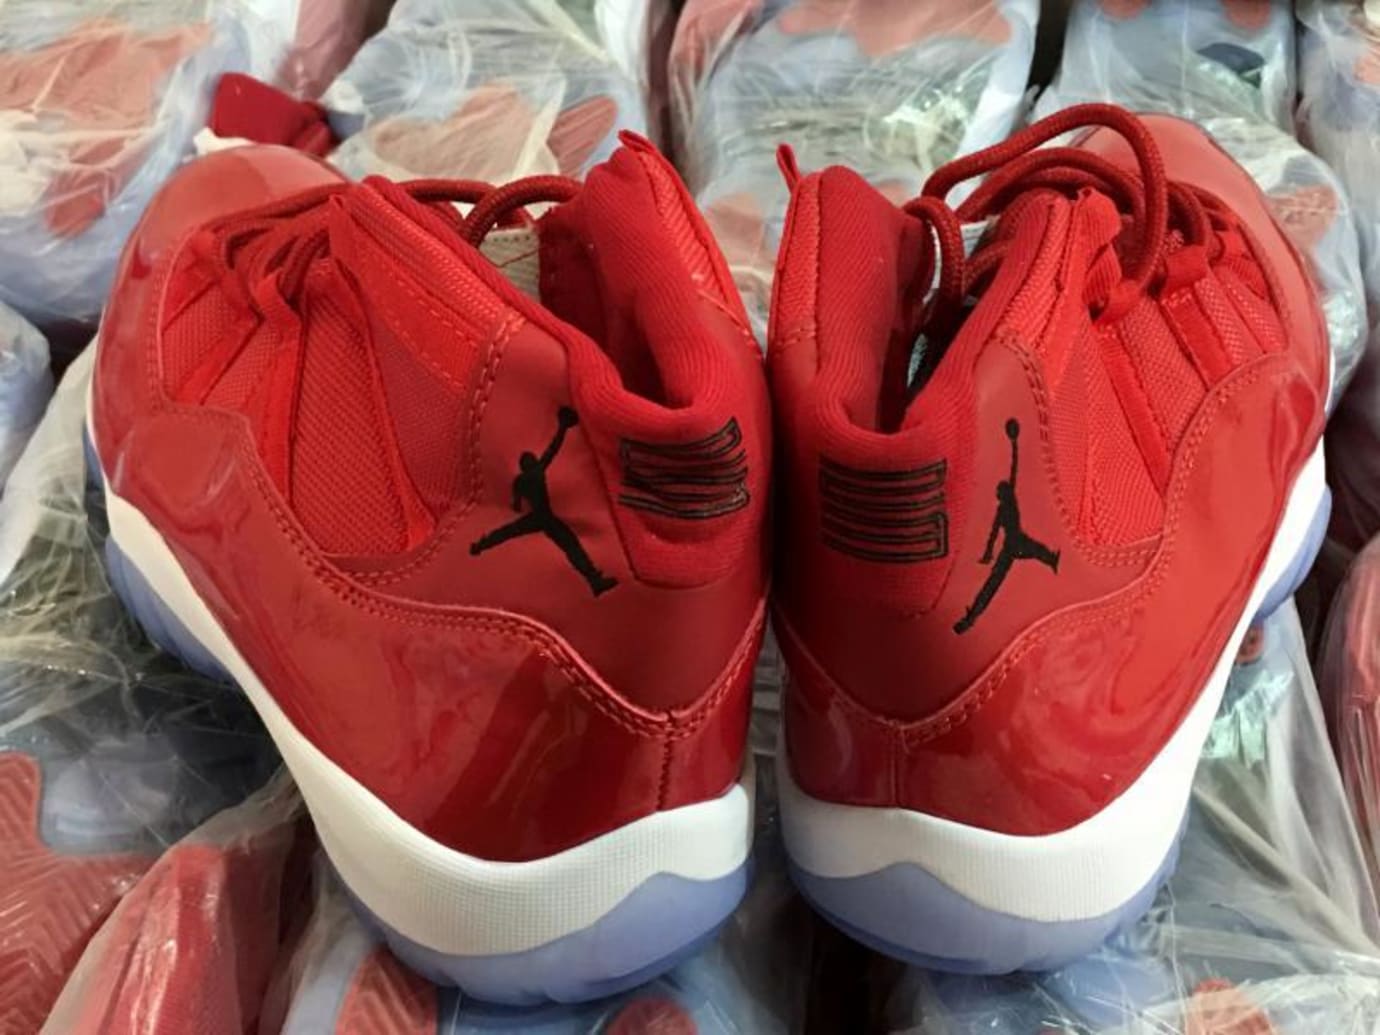 Fake Air Jordan 11 Red